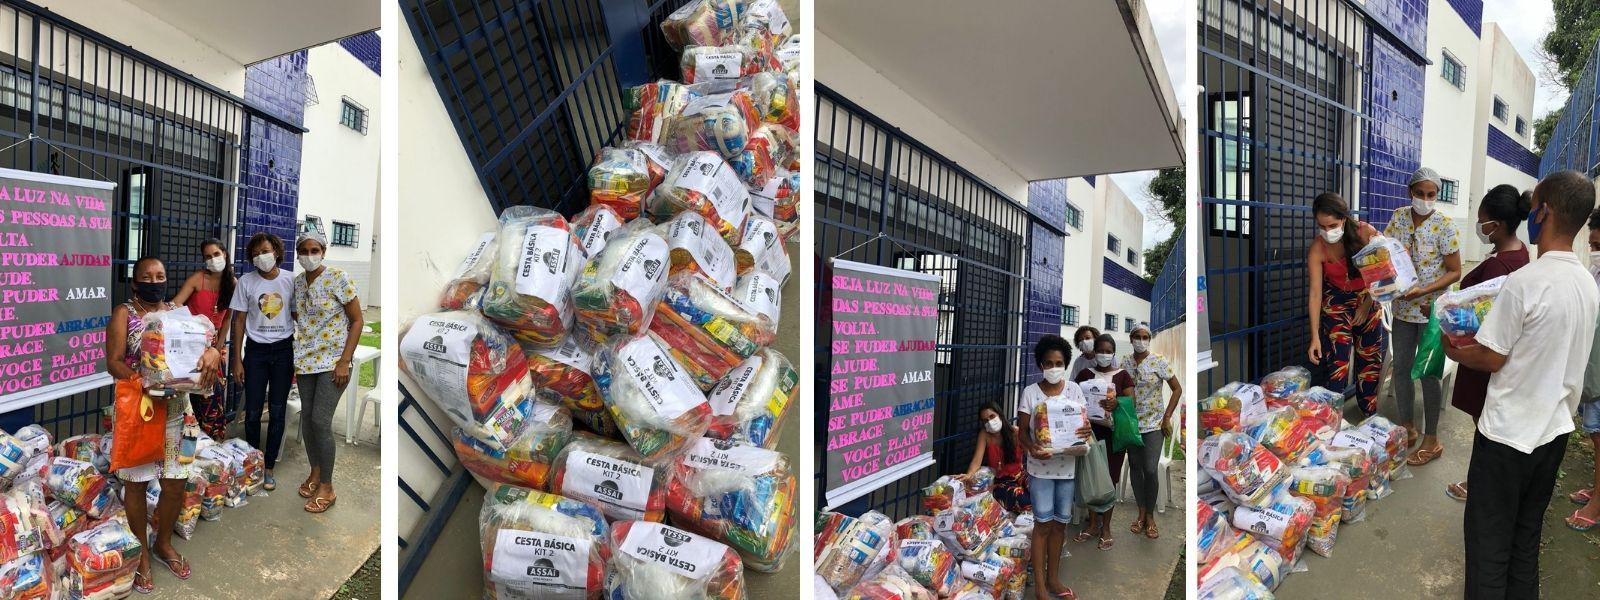 Campanha Solidária beneficia mais de 500 famílias no Subúrbio de Salvador